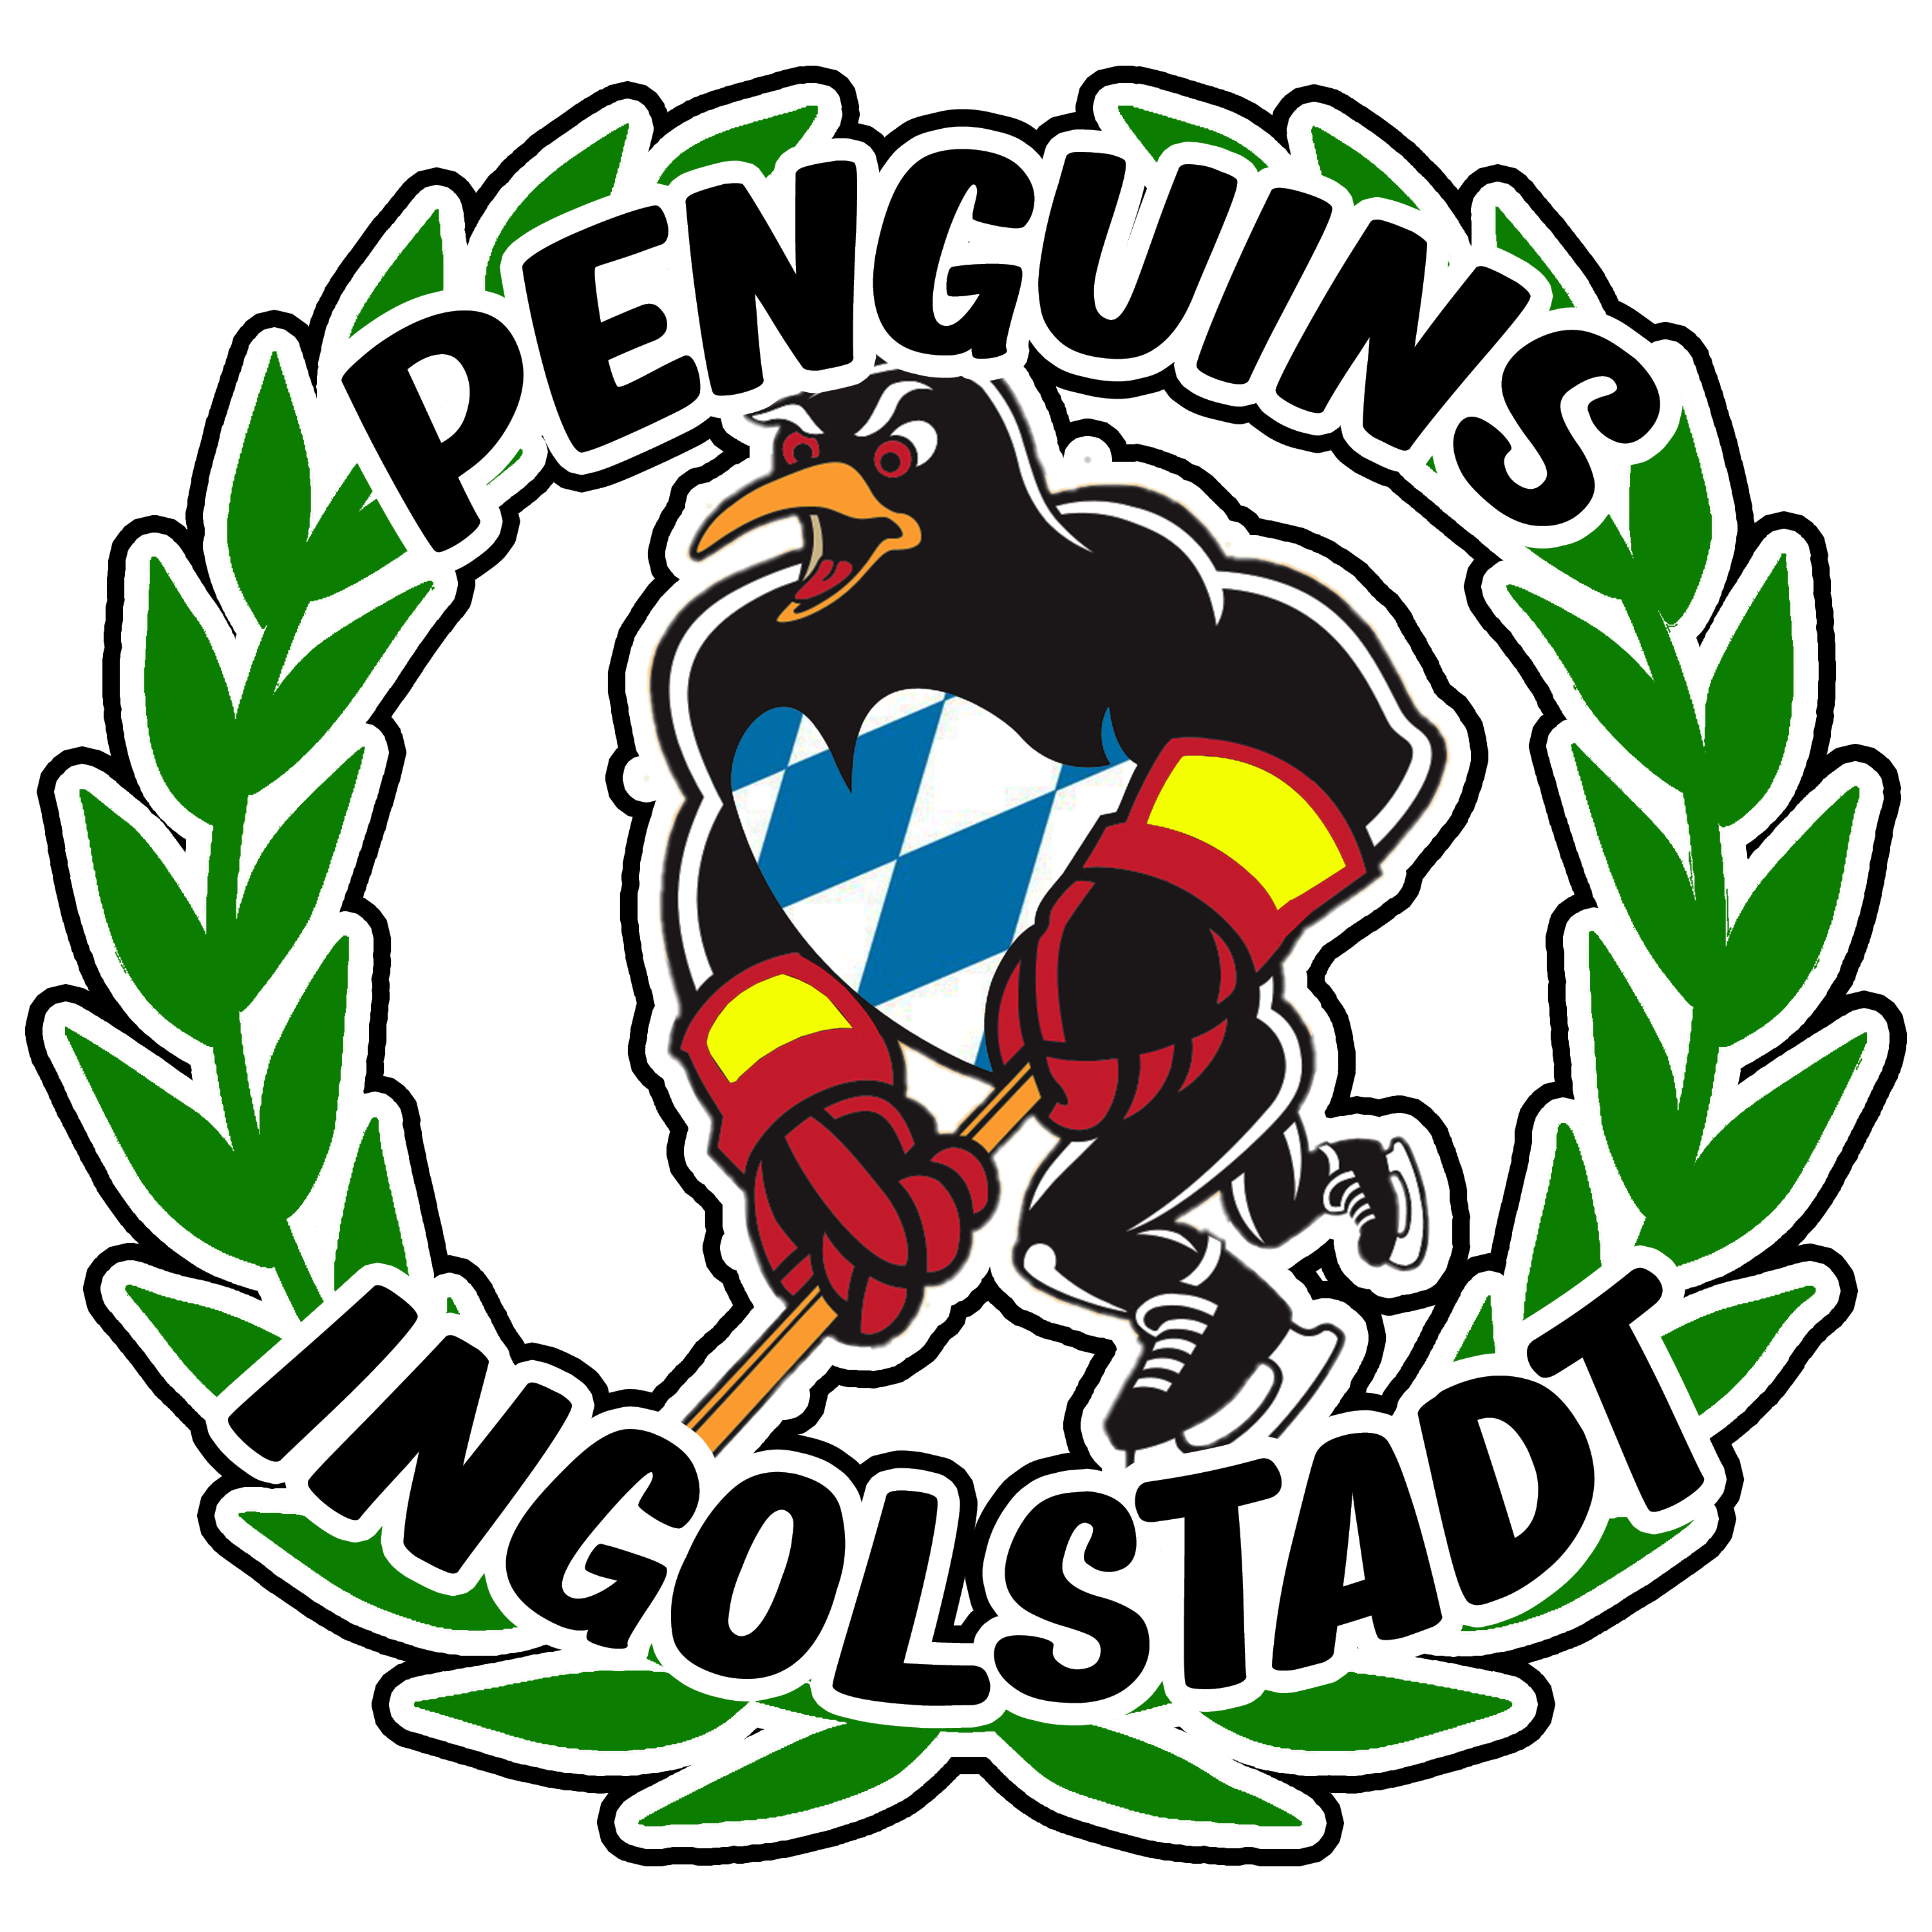 Penguins Ingolstadt (DNF)